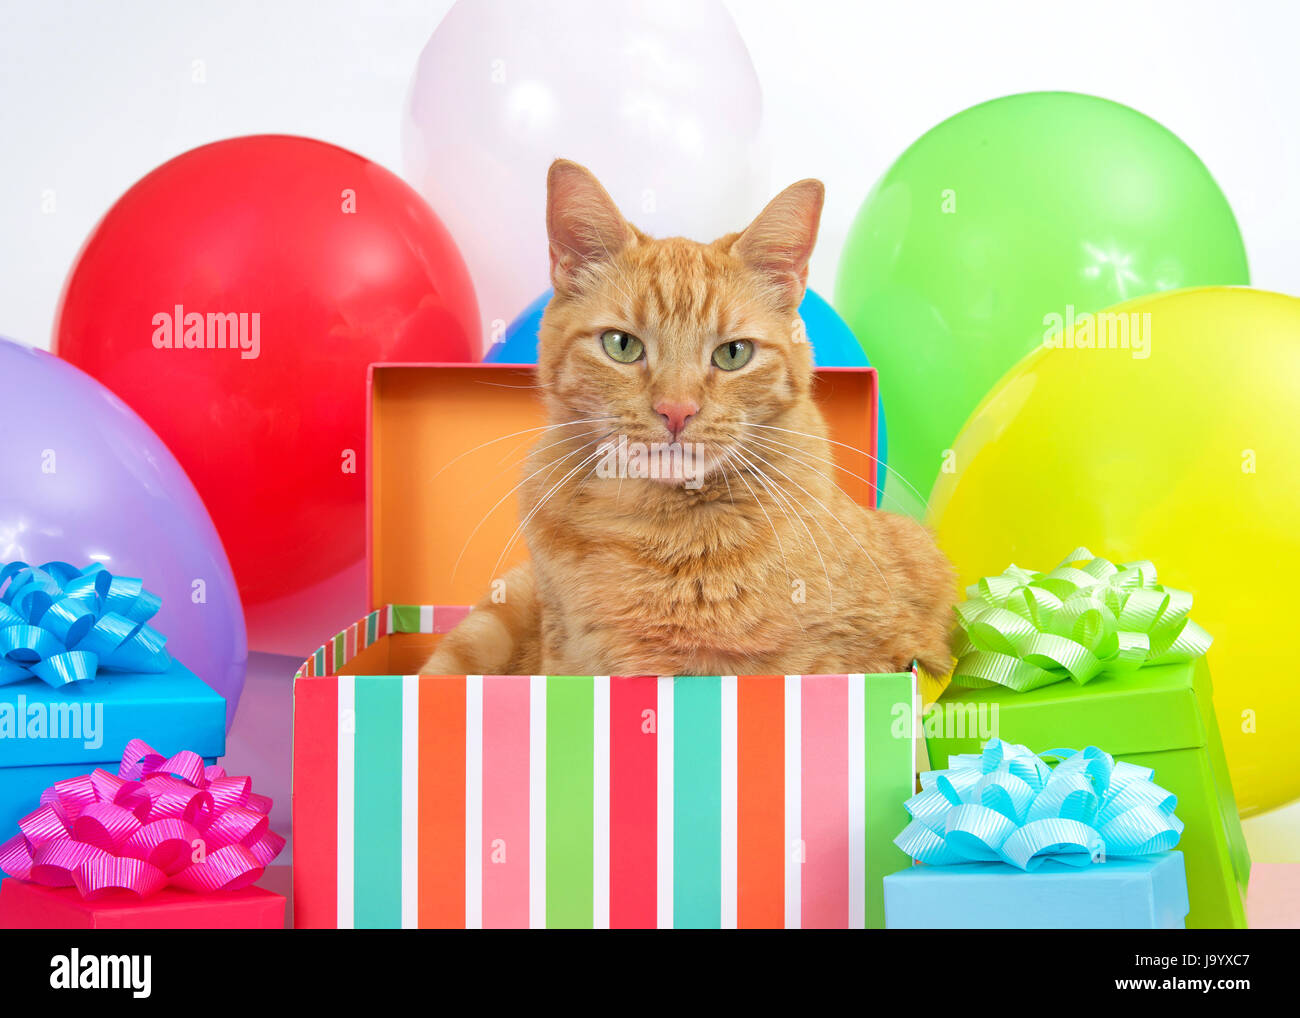 Orange Tabby Katze Auspacken ein Geburtstag, umgeben von bunten Geschenke und hellen Ballons Höchststand. Überraschungs-Party. Stockfoto